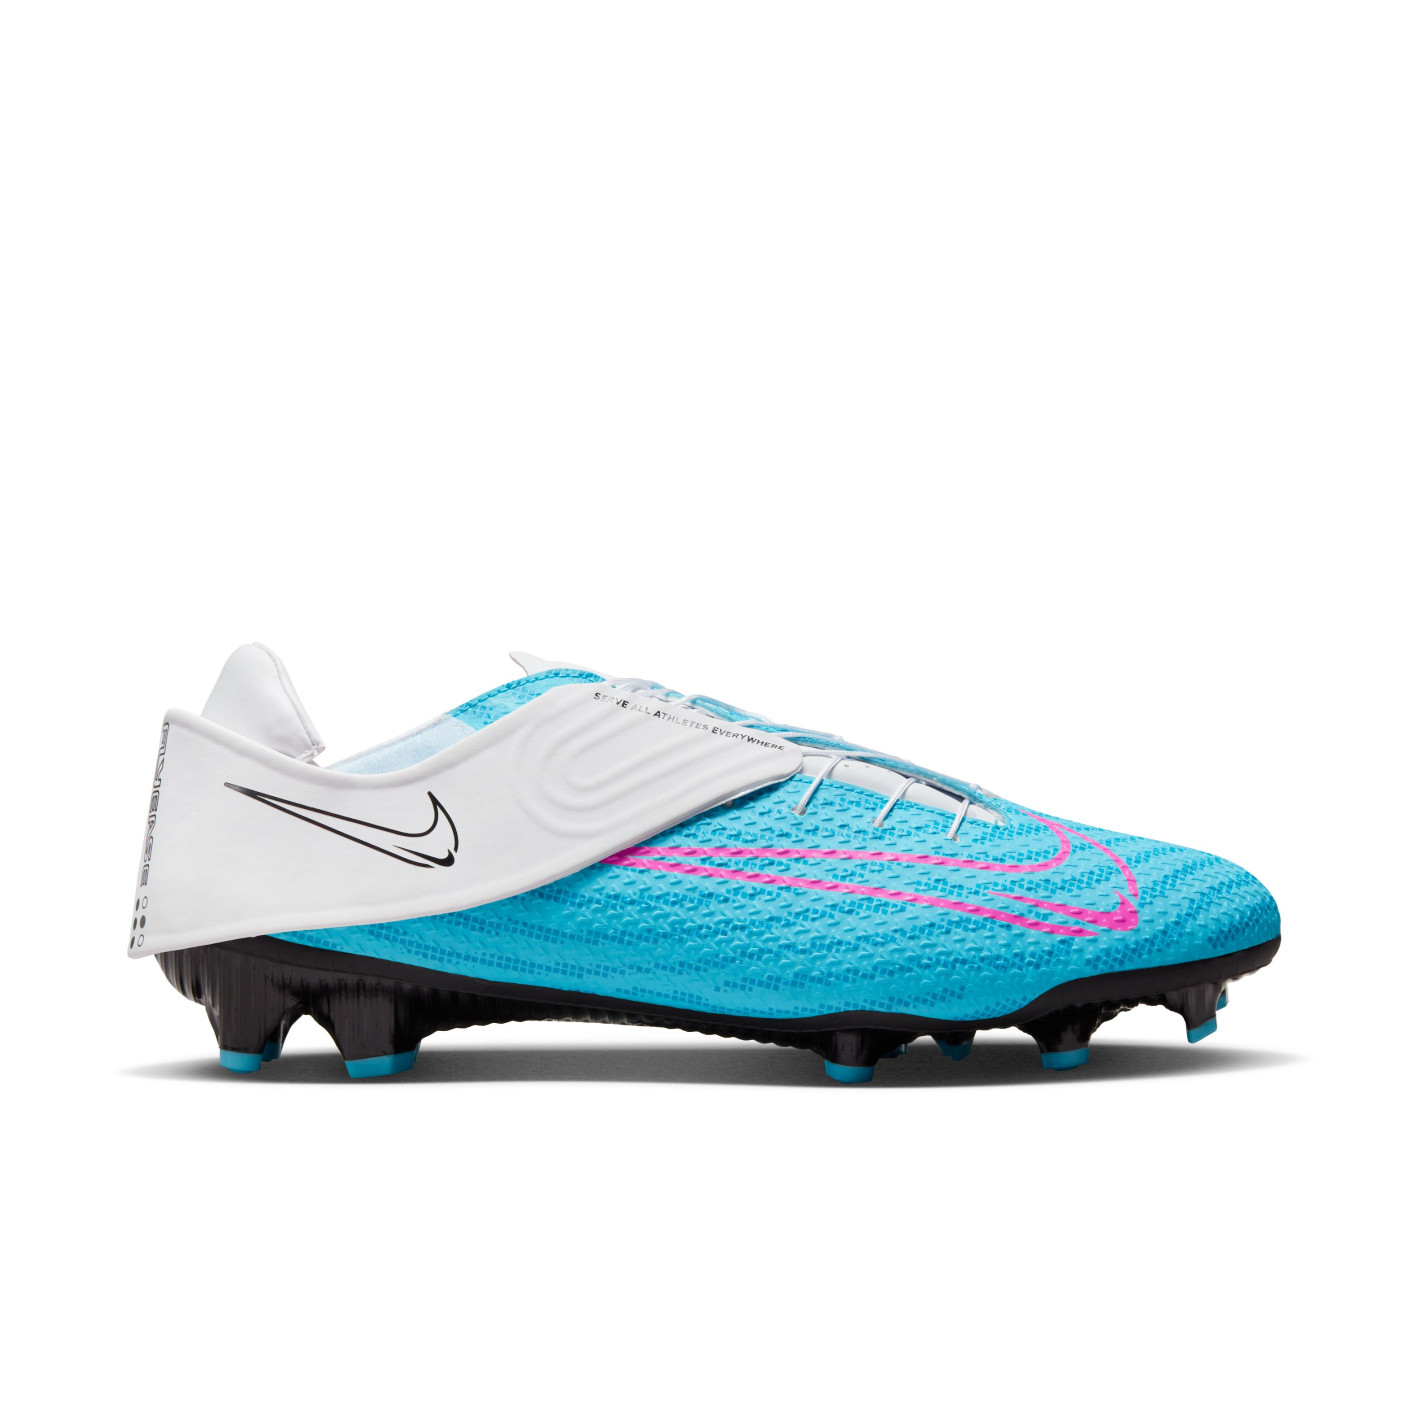 Nivia Sports - Nivia Ashtang football and Football shoes.. ⠀ ⠀ Buy Now at  buff.ly/2VoK4MC ⠀ ⠀ Reposting @hirancaptures: ⠀ ...⠀ 